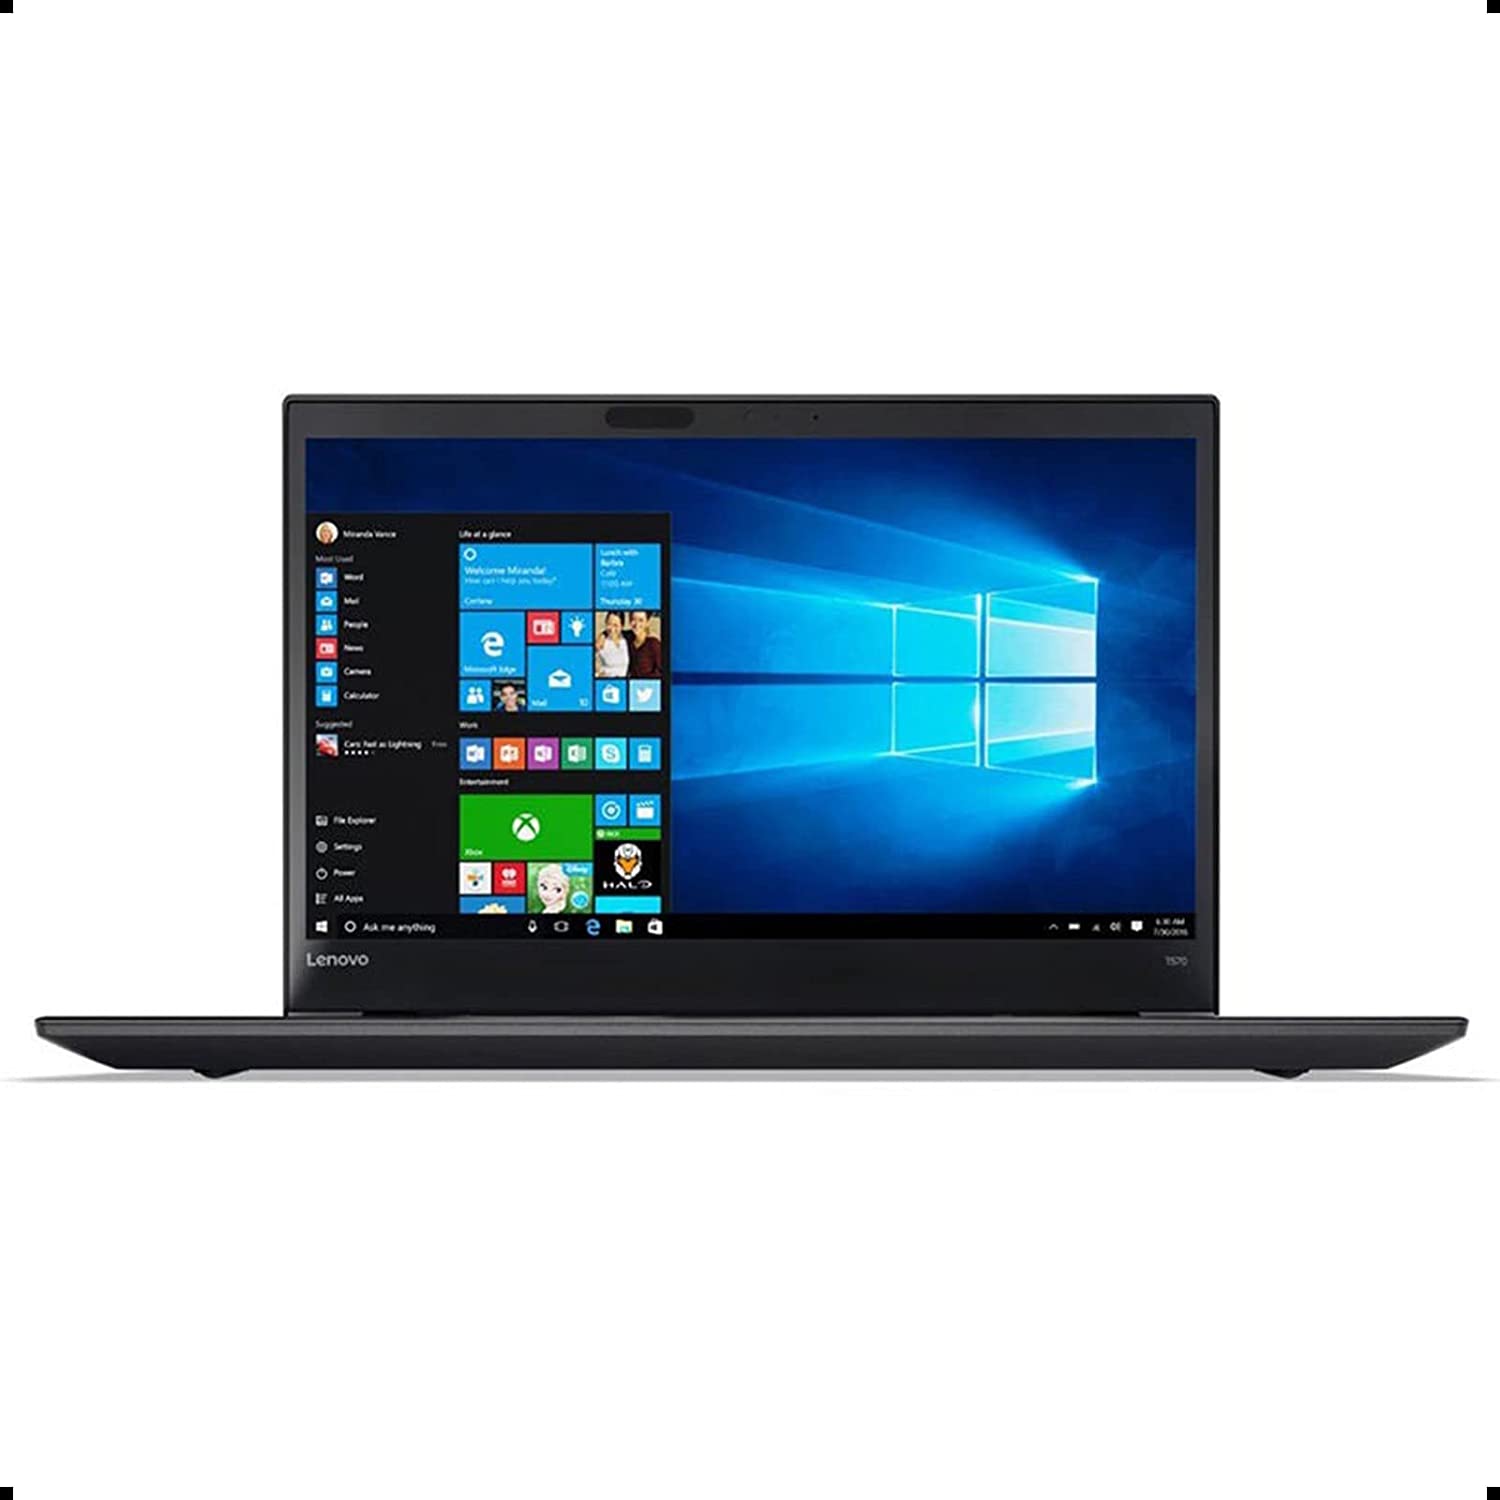 Lenovo ThinkPad T570 Intel Core i5-6300U 3.0GHz, 8GB RAM, 256GB SSD,  WiFi, Bluetooth 4.1, Win10 Pro(Renewed)